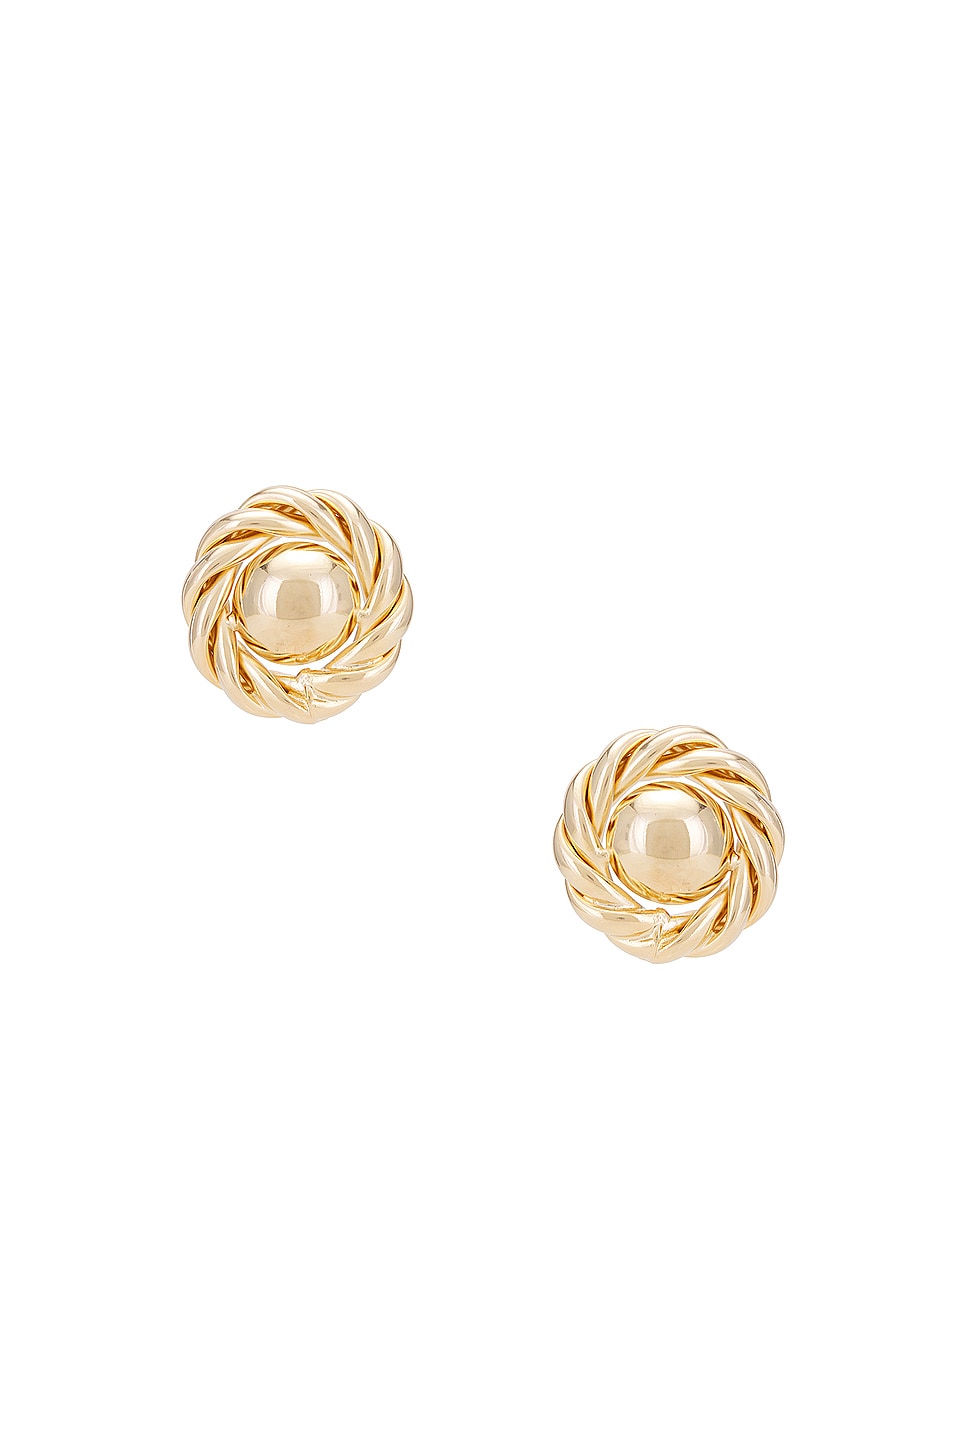 Coco Earrings in Metallic Gold